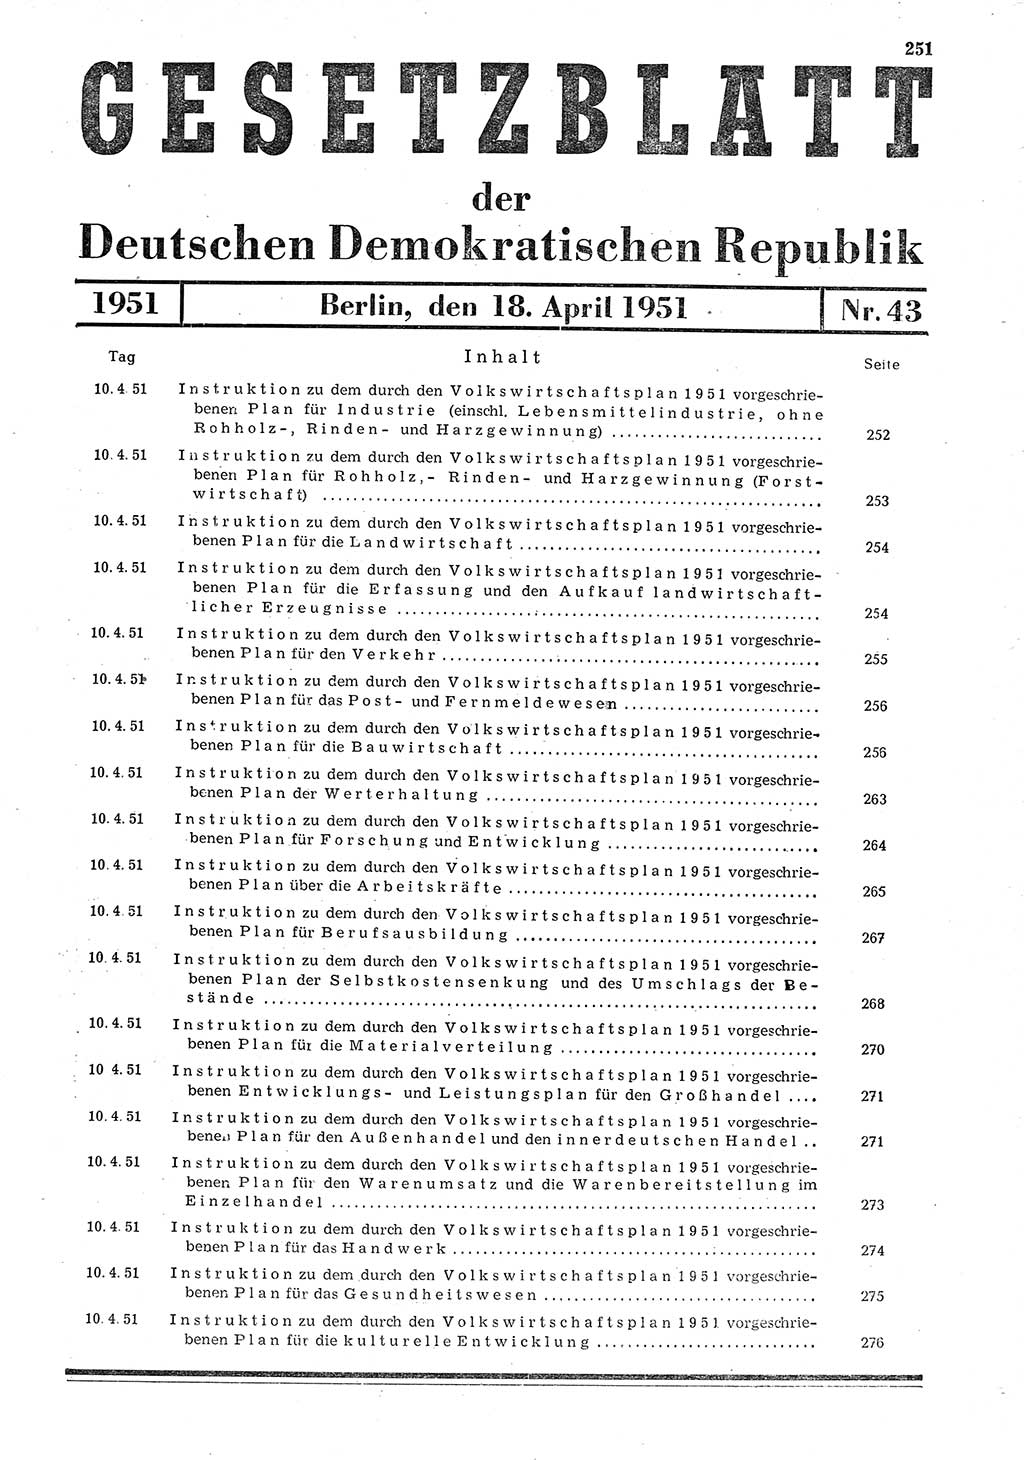 Gesetzblatt (GBl.) der Deutschen Demokratischen Republik (DDR) 1951, Seite 251 (GBl. DDR 1951, S. 251)